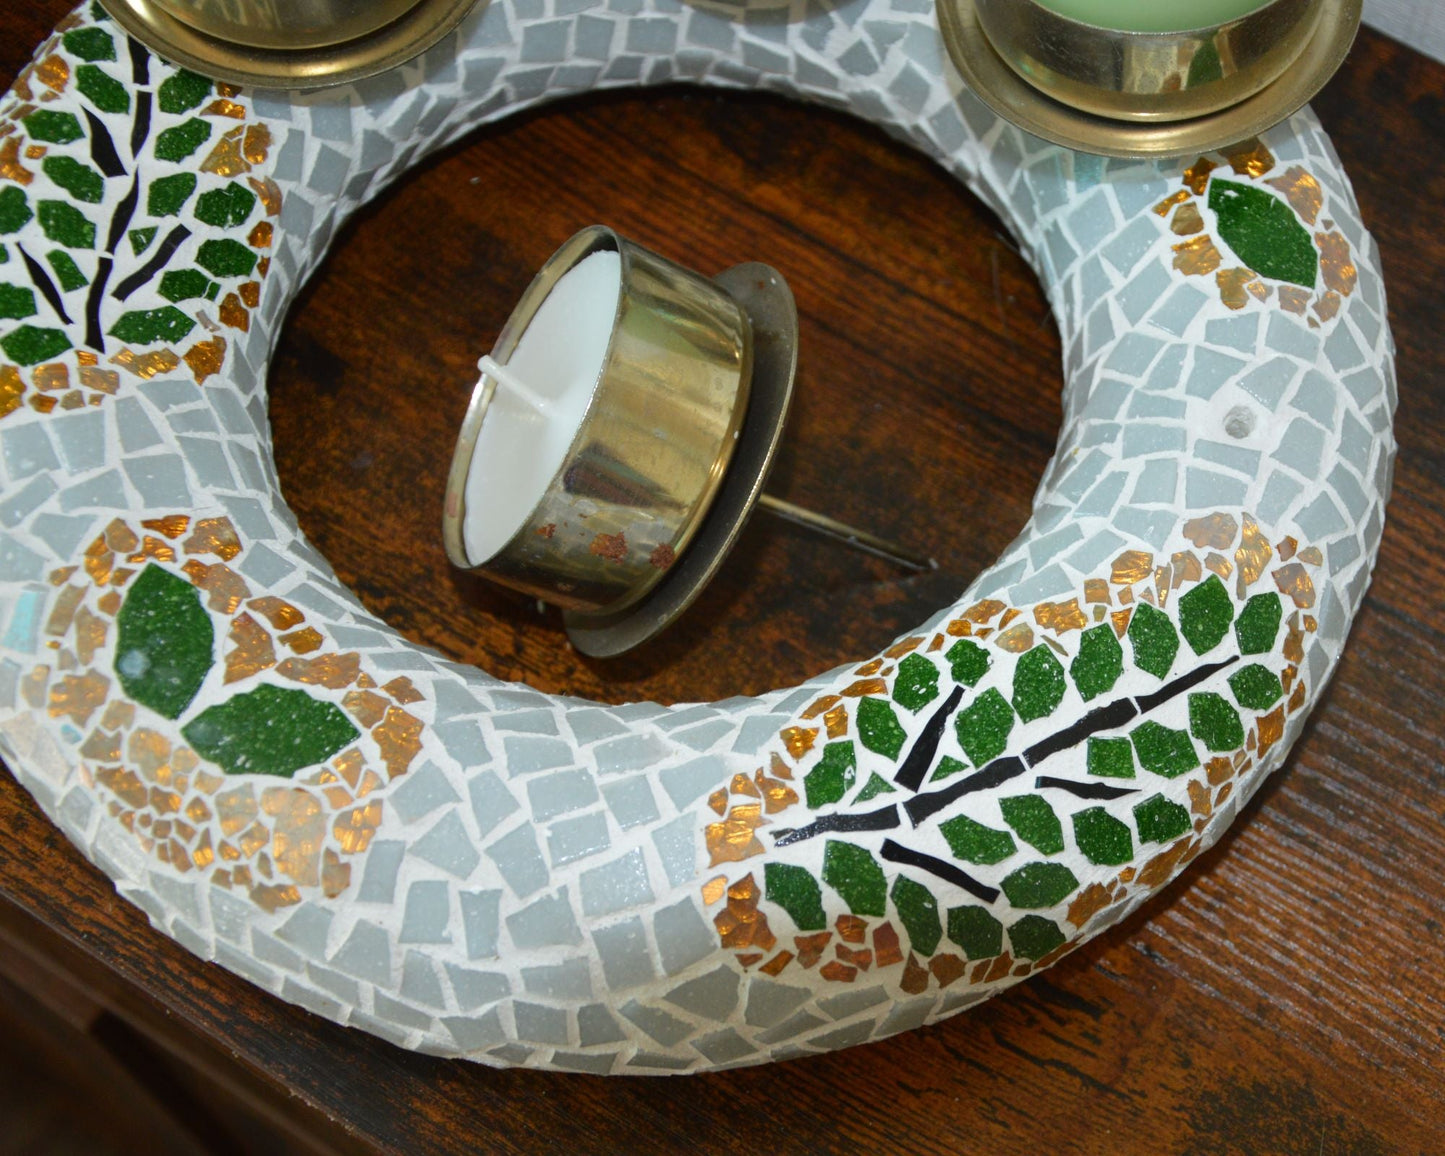 Mosaik Adventskranz 25 cm Durchmesser grau grün gold - handgemacht - Mosaikkasten Advent Adventsdeko